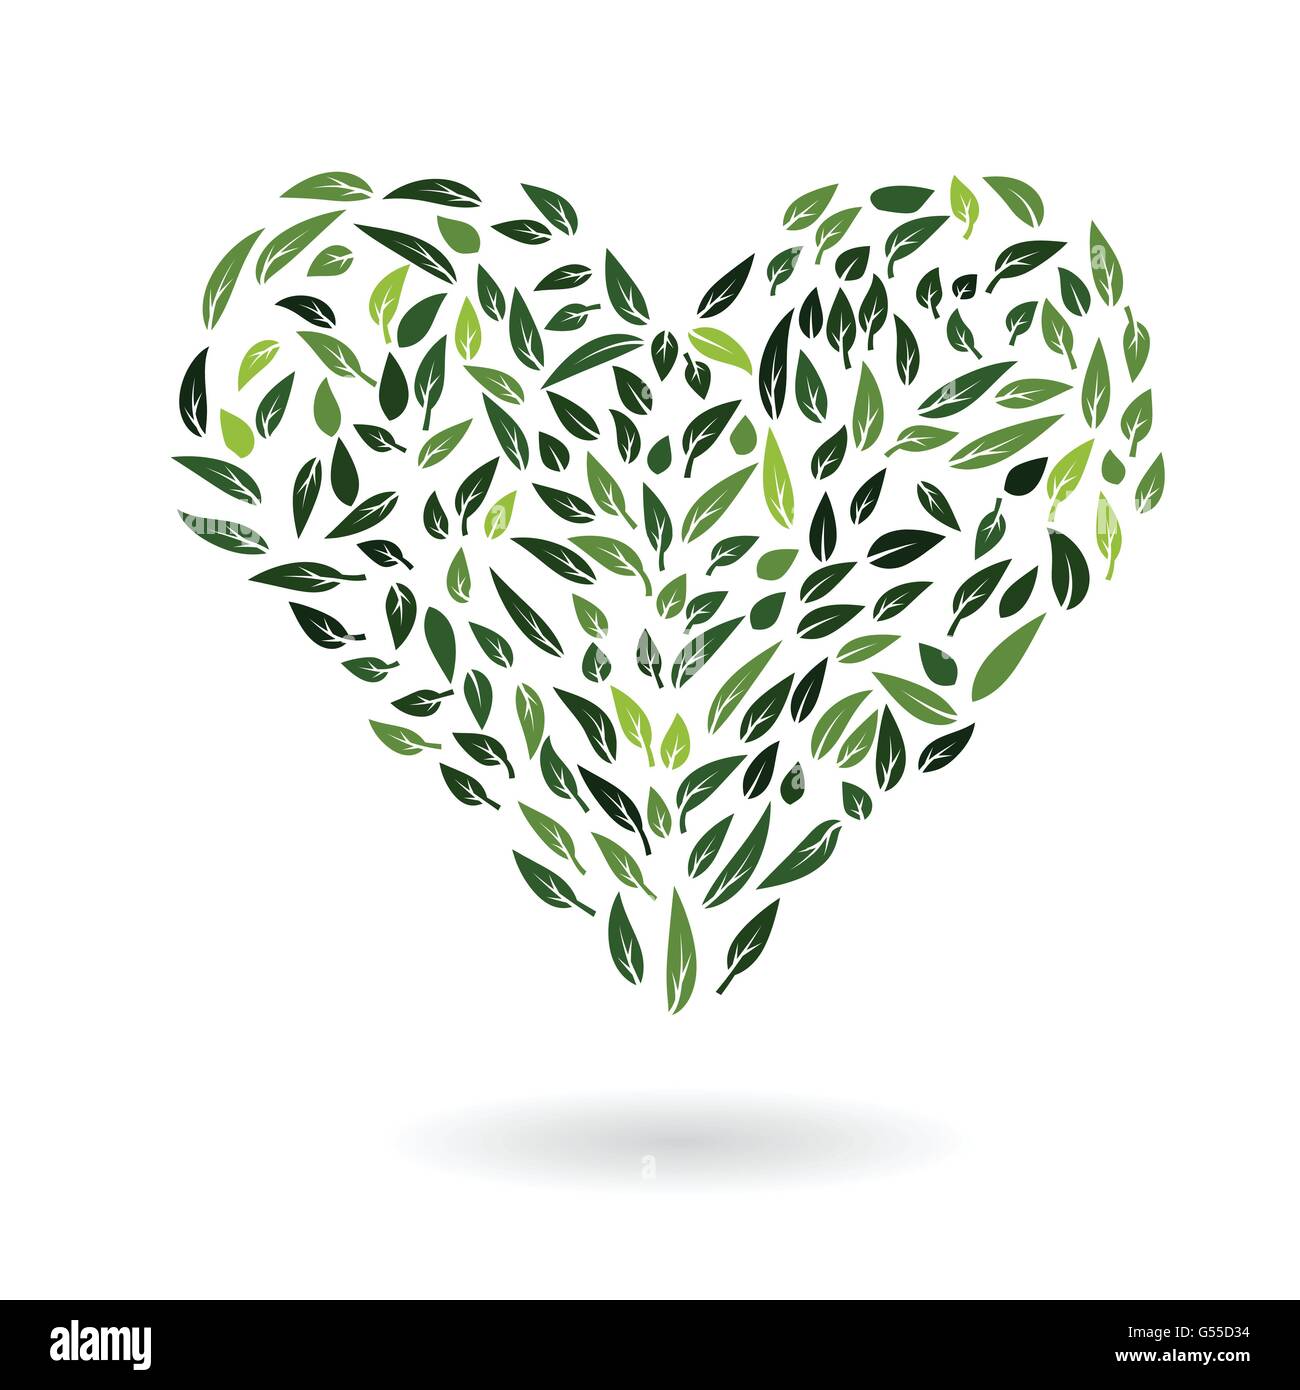 Abstract il simbolo del cuore da foglie verdi protezione ambientale eco concetto illustrazione vettoriale Illustrazione Vettoriale